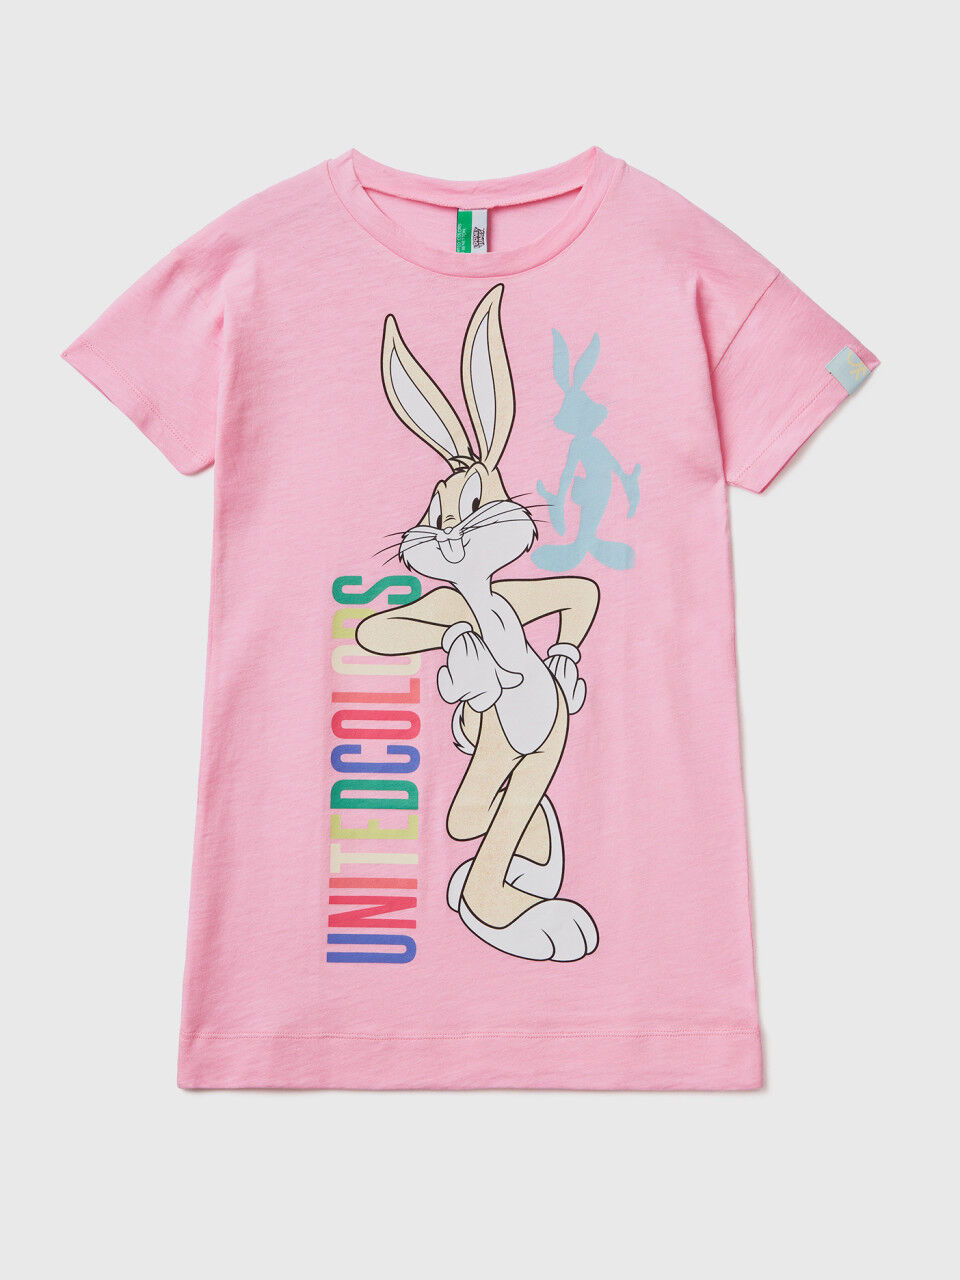 Bugs Bunny nightshirt